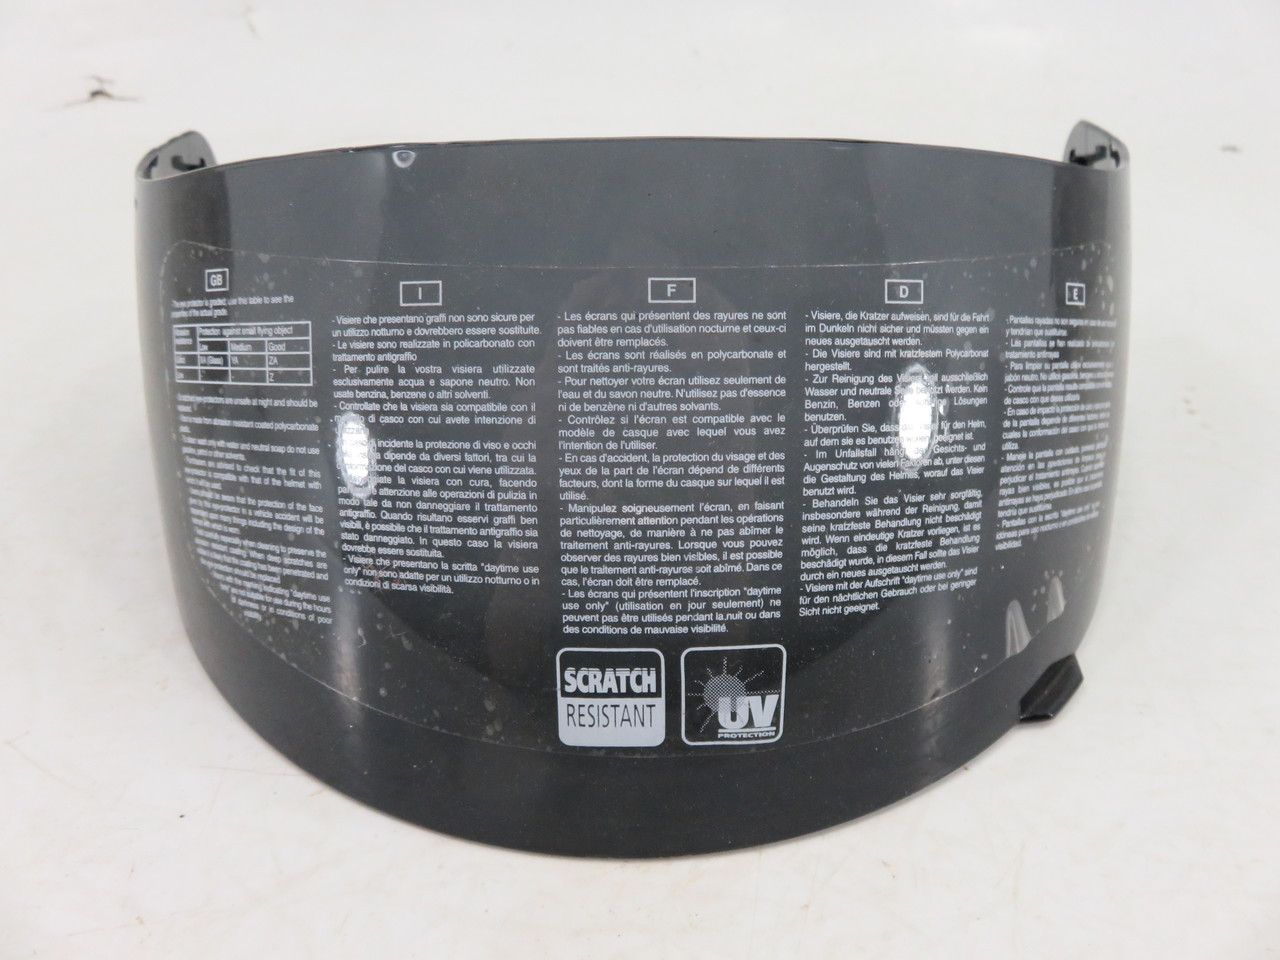 AGV Dark Smoke Helmet Shield